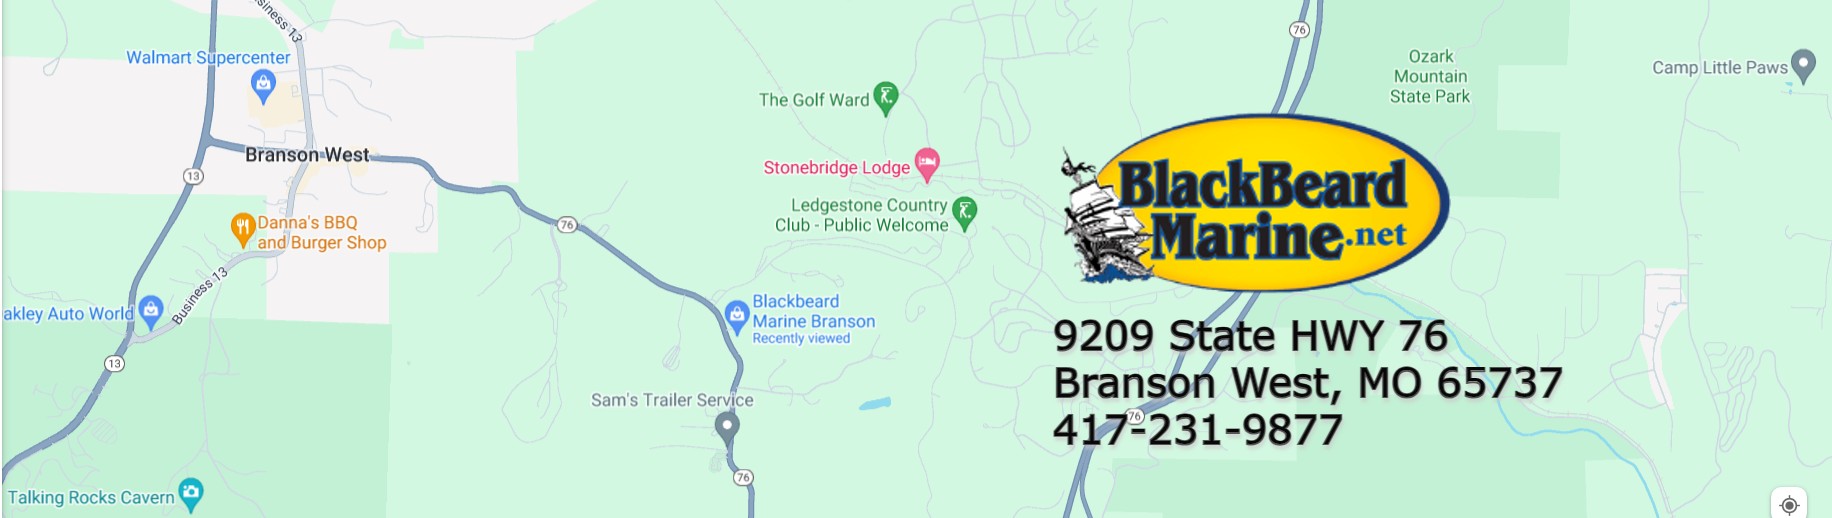 https://blackbeardmarine.net/our-locations/boat-dealer-in-branson-mo/